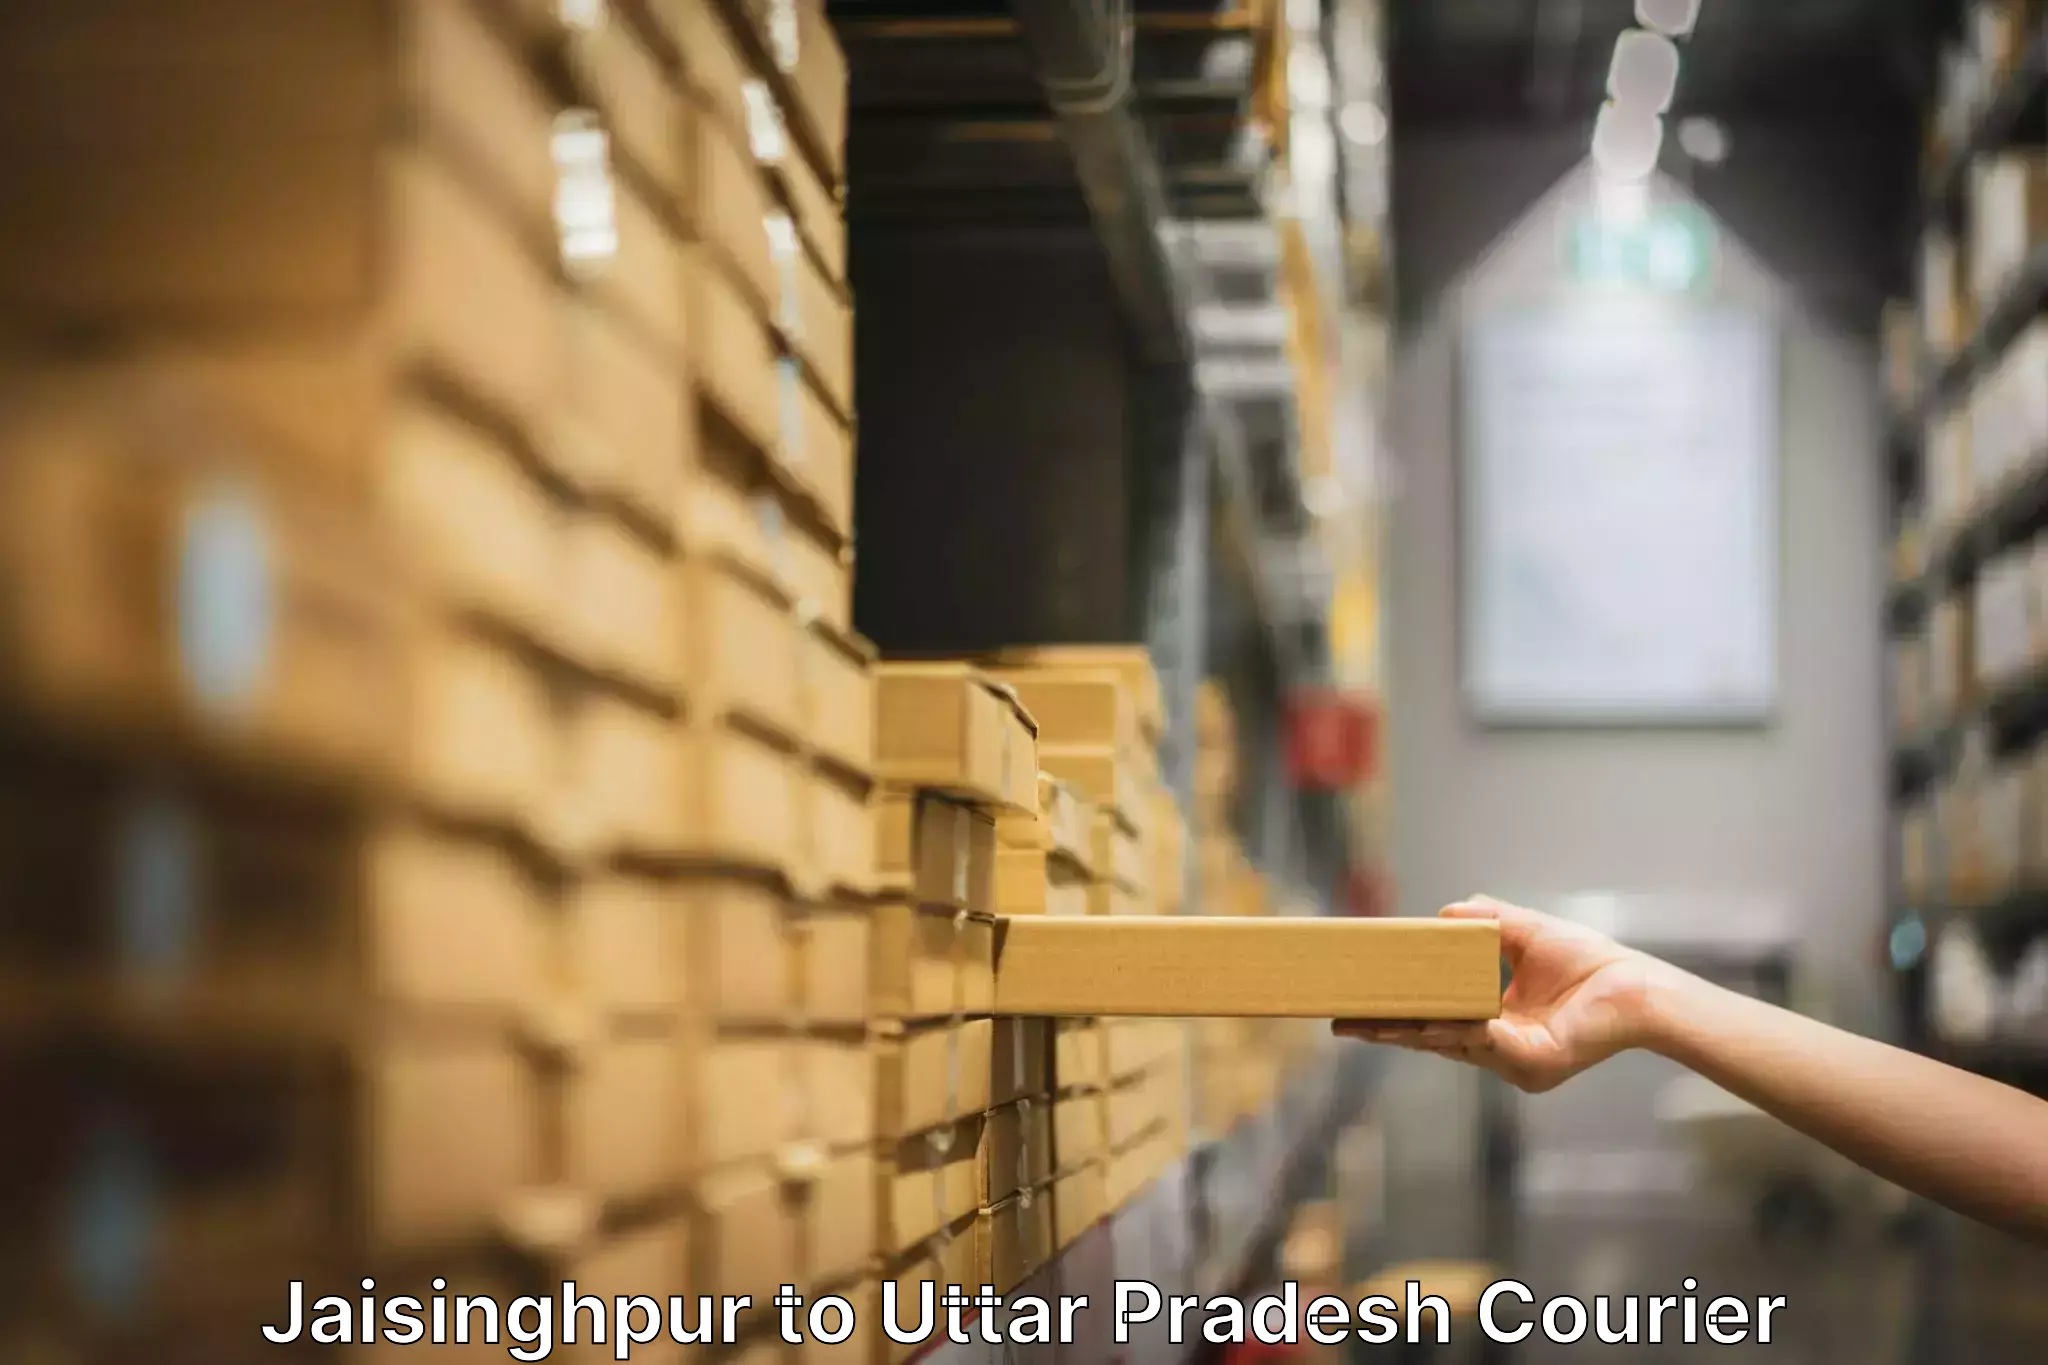 Professional furniture movers in Jaisinghpur to Sohgaura